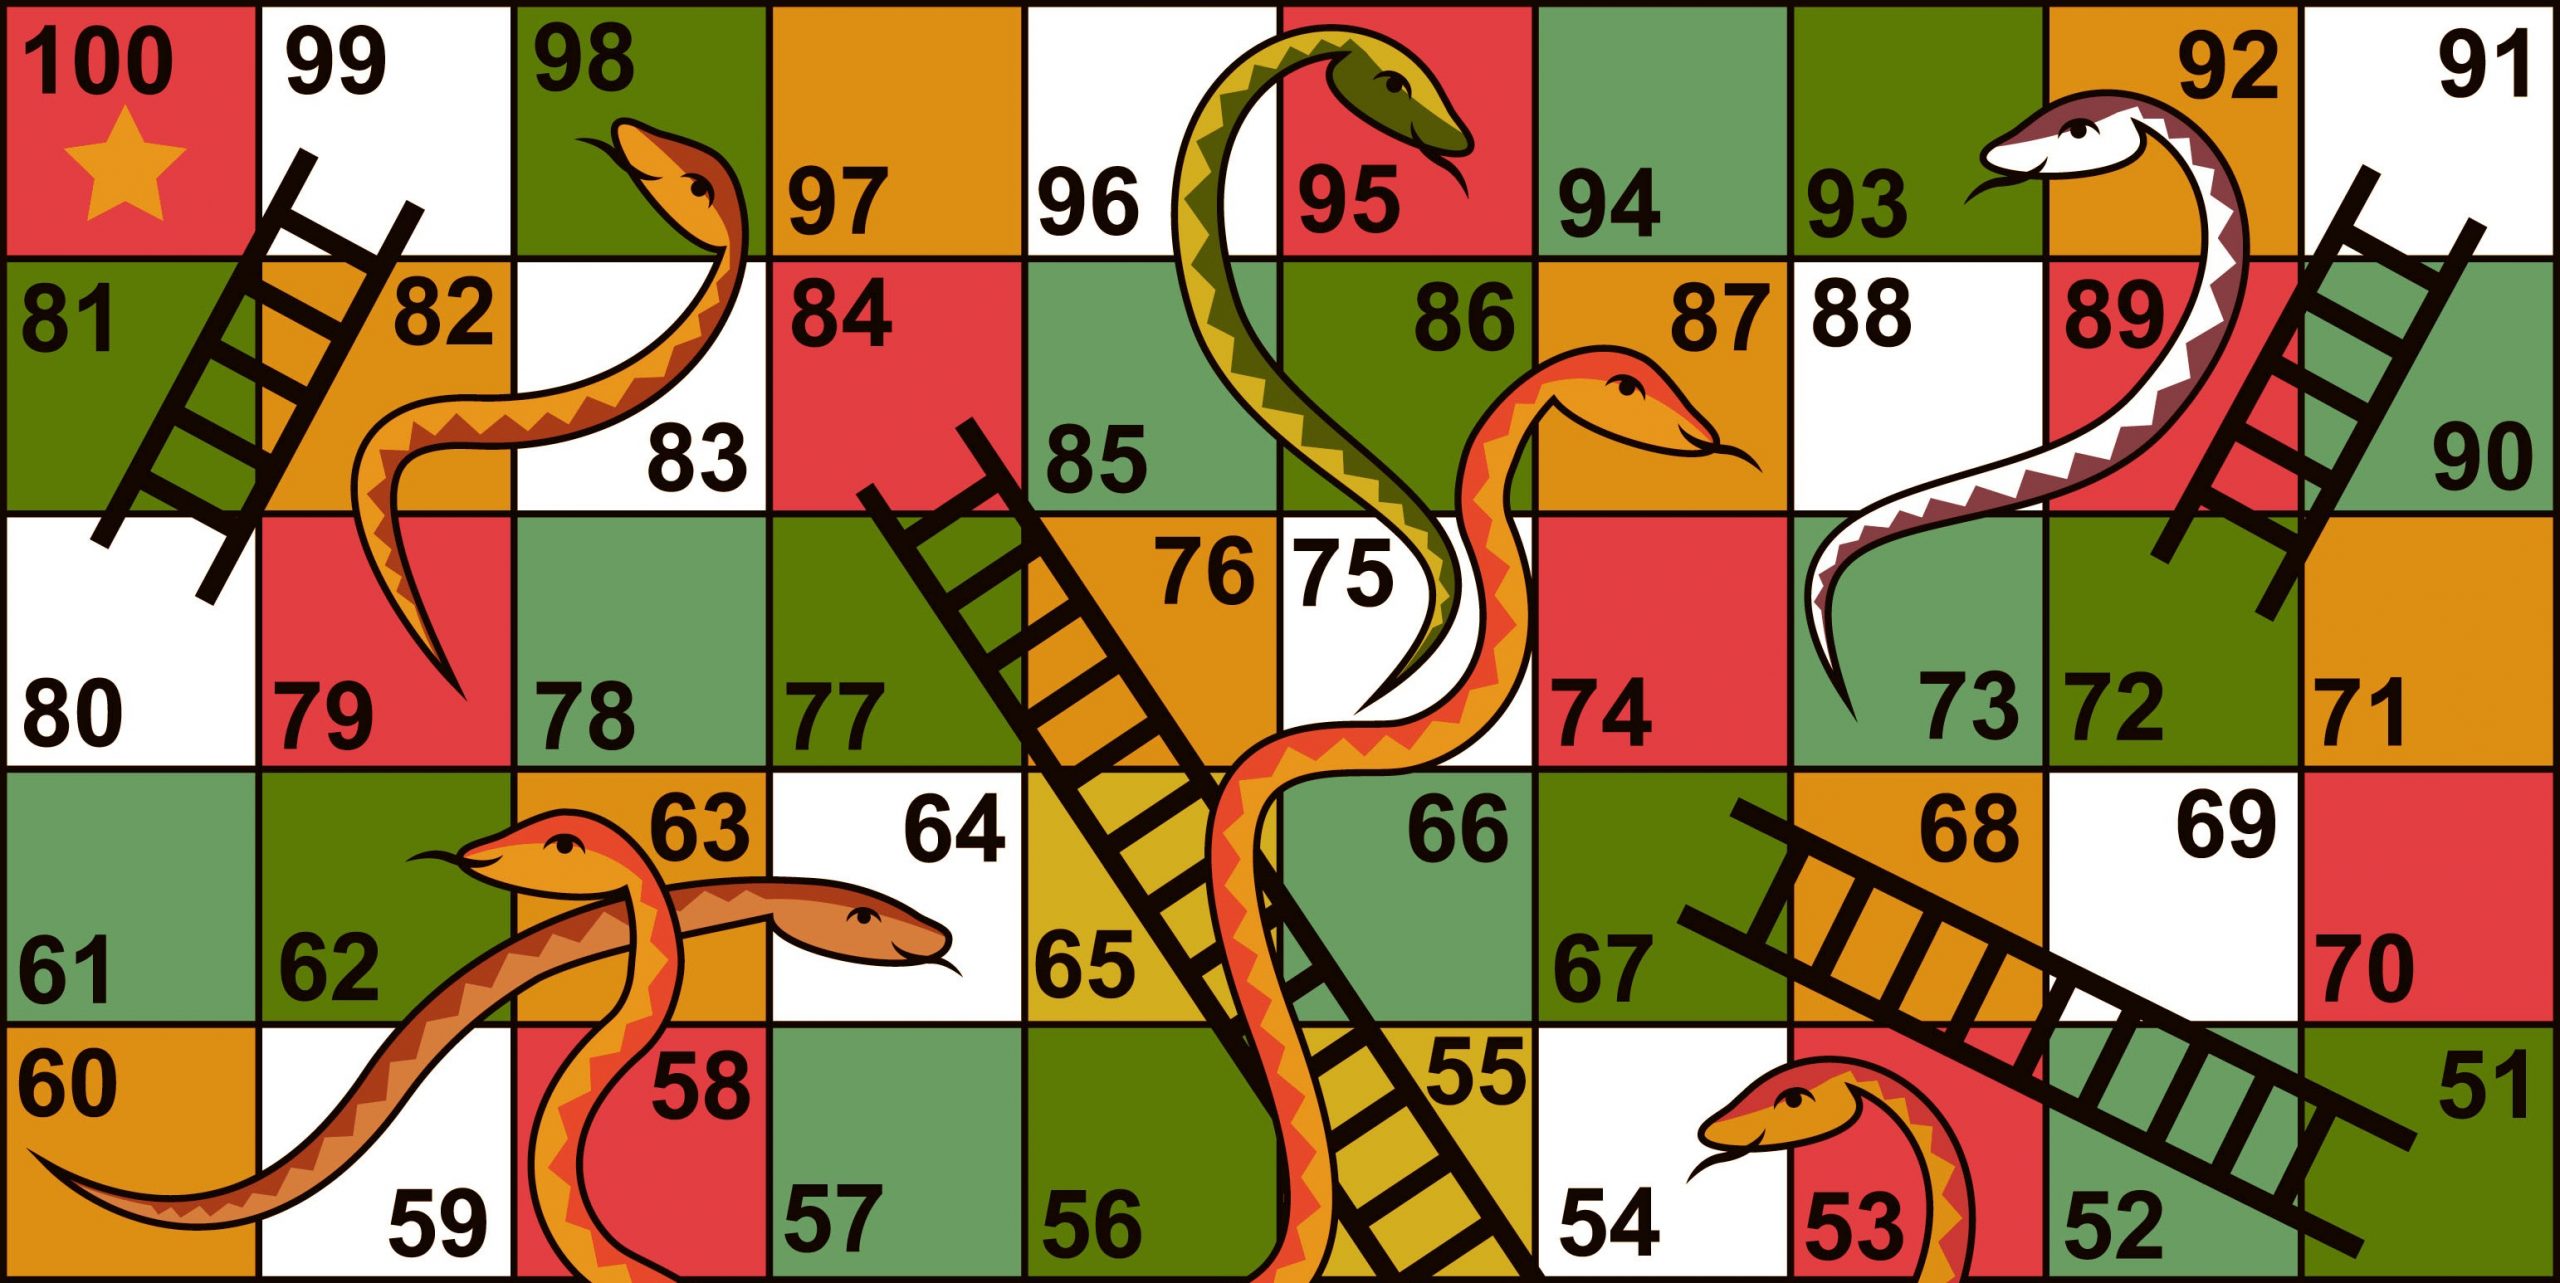 Design Snake and Ladder Game | OOD